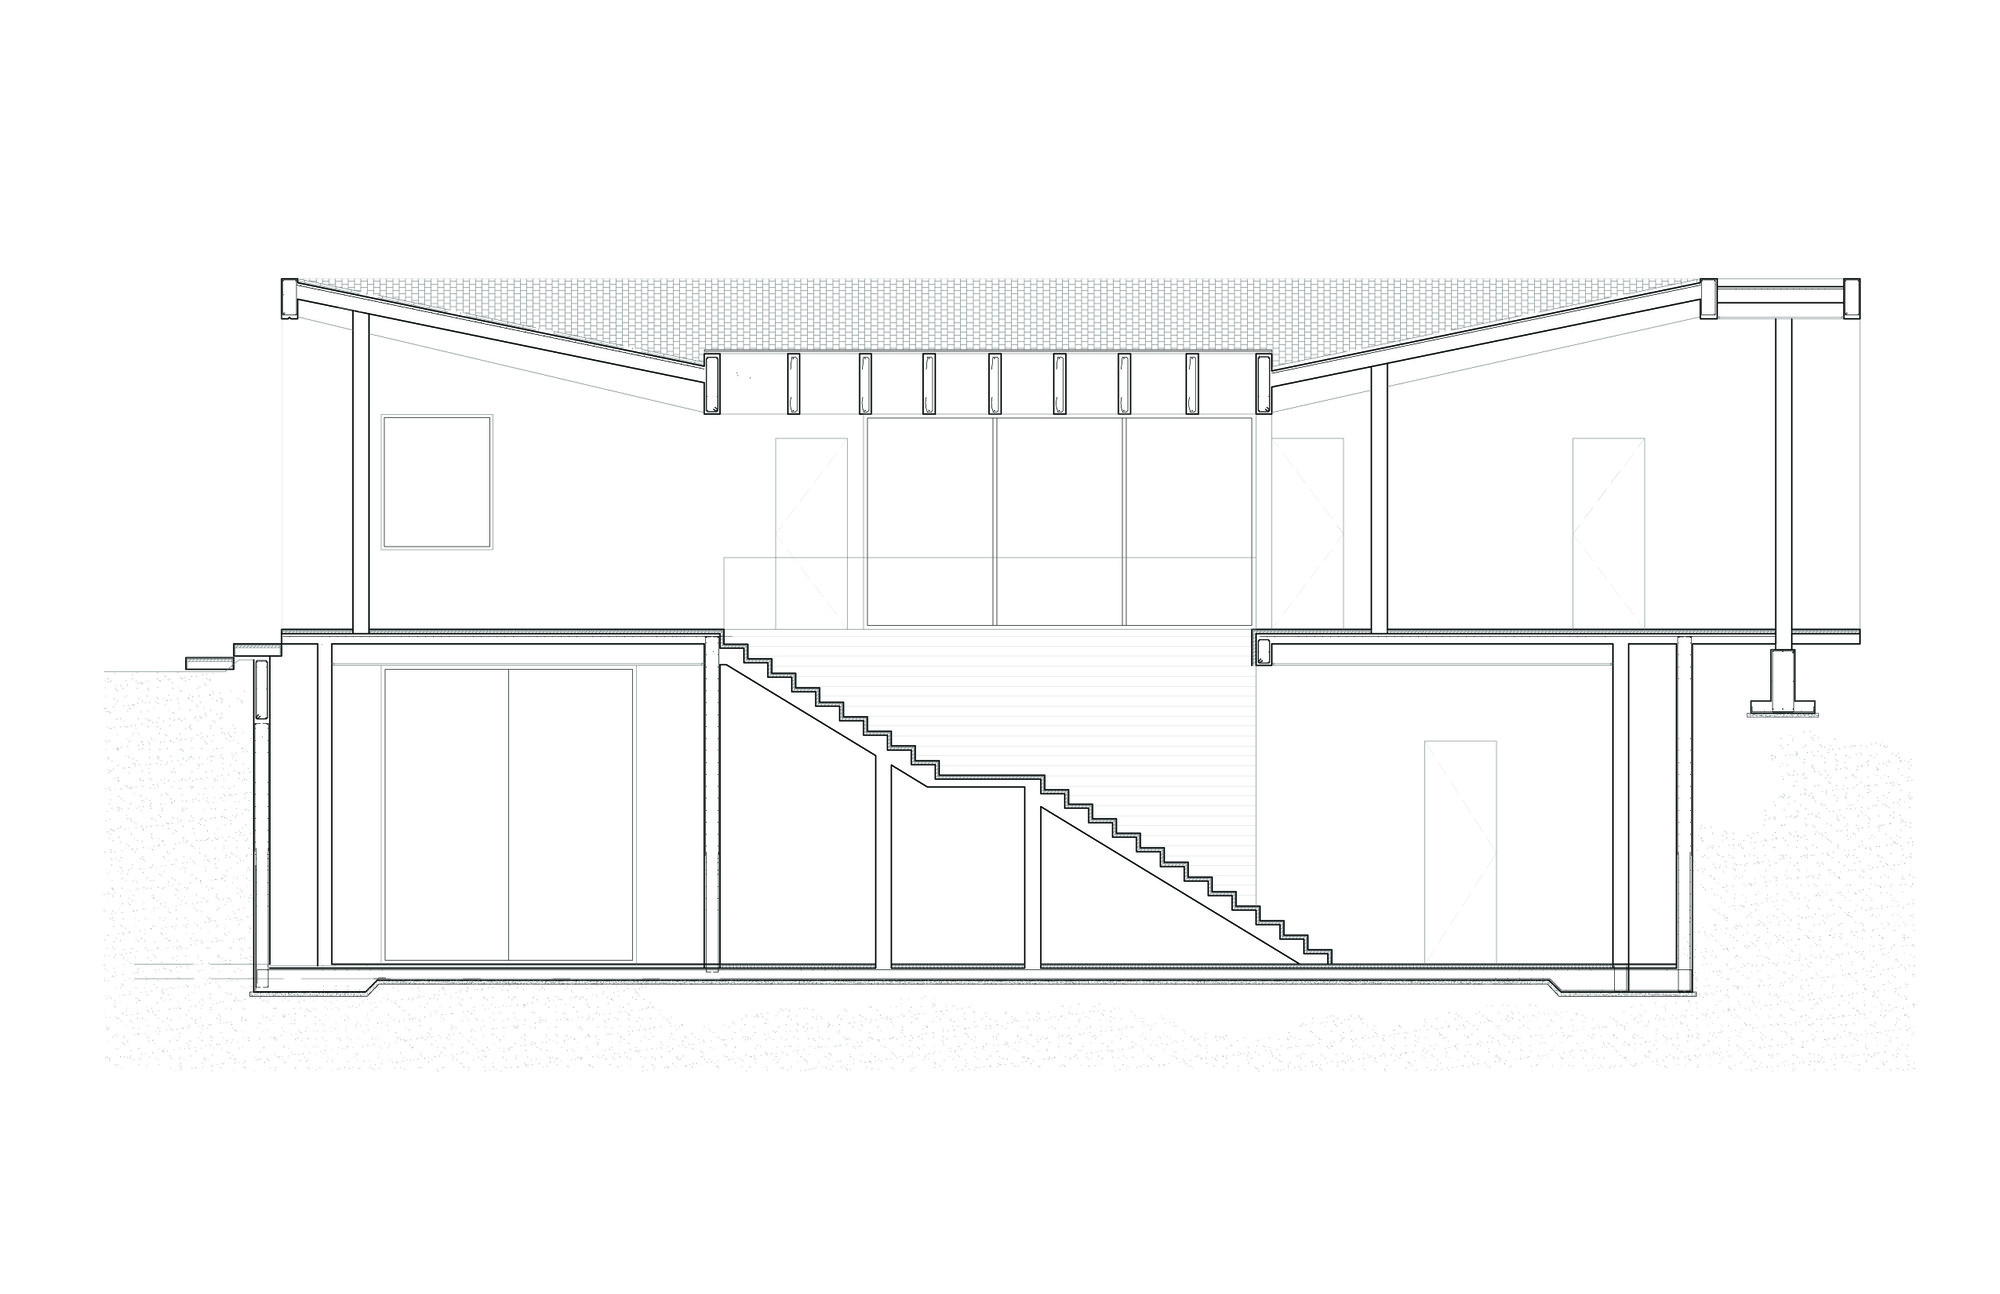 Дизайн частного дома Aurelia от студии Jorge Hernandez de la Garza